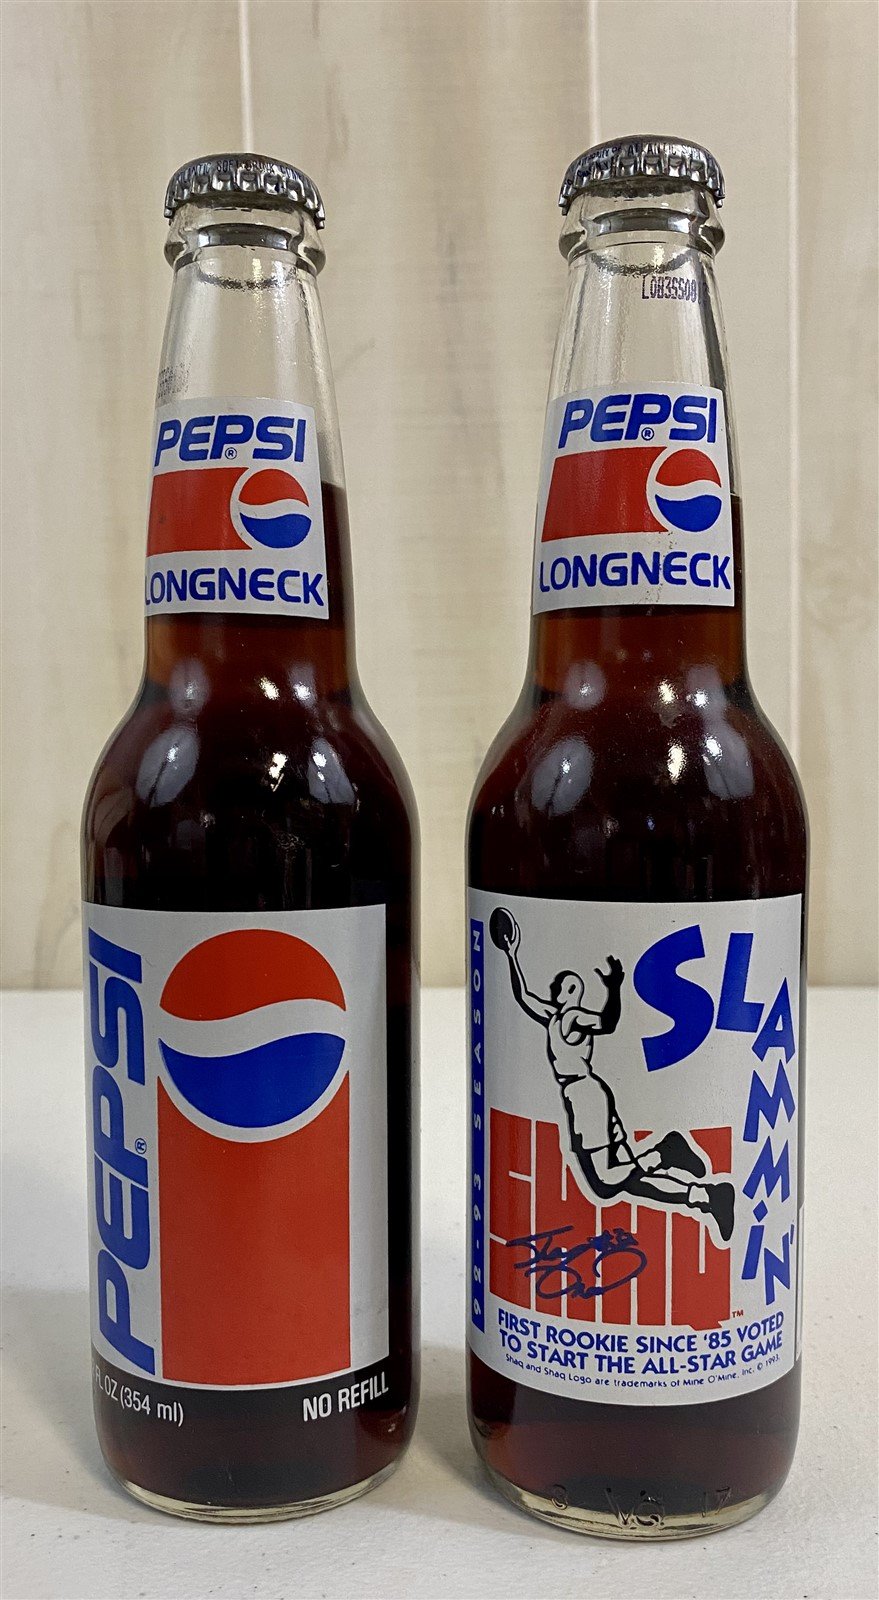 Retro sodas in long neck glass bottles.